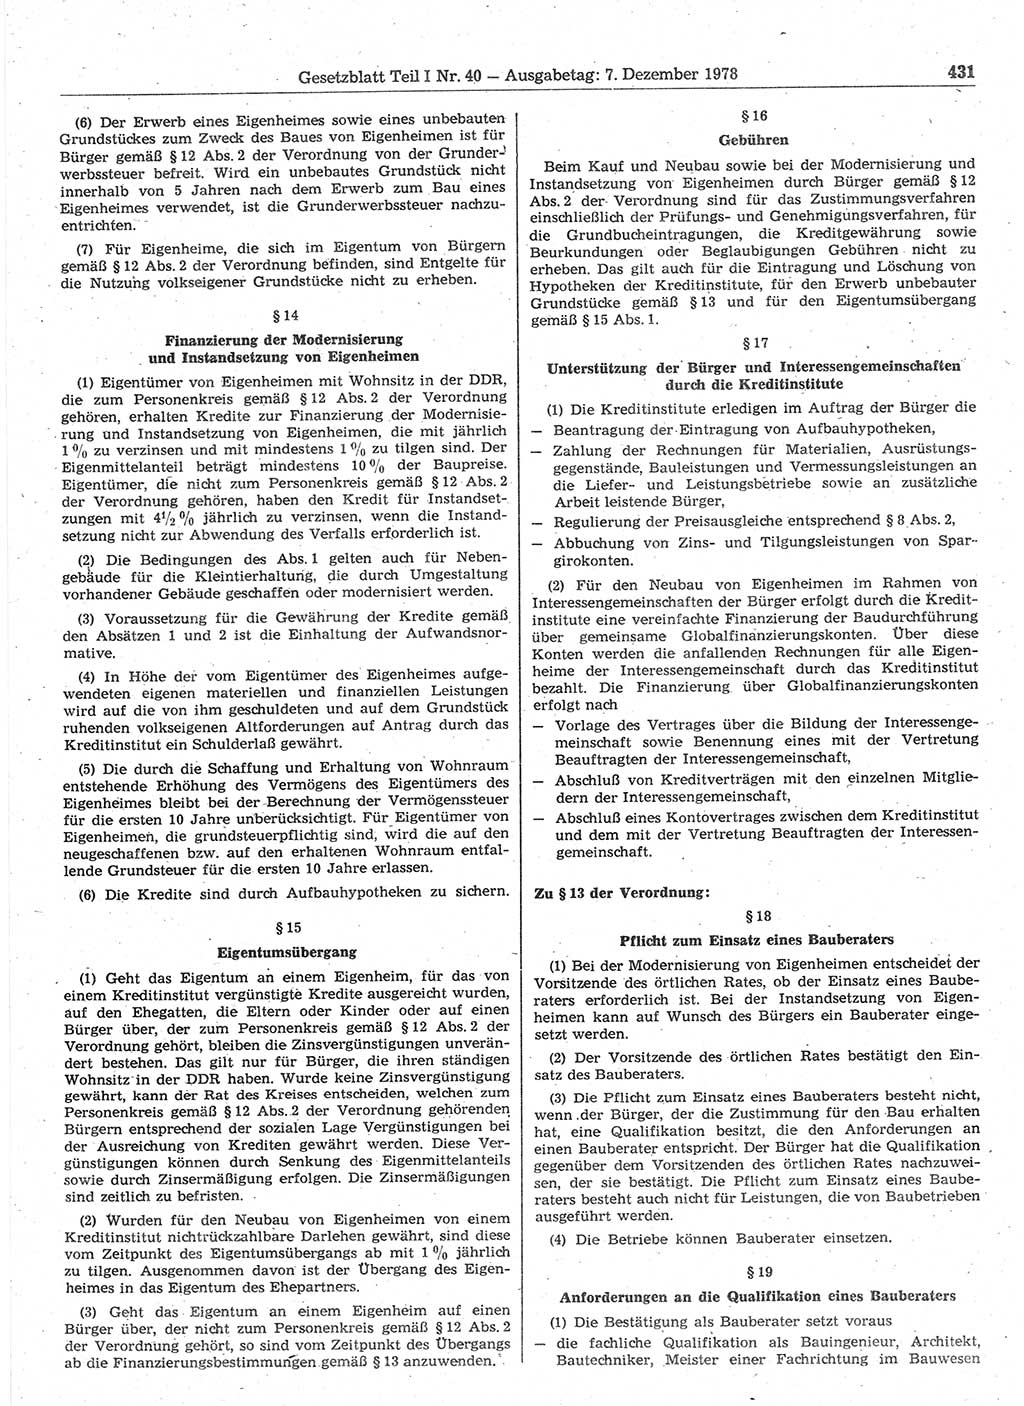 Gesetzblatt (GBl.) der Deutschen Demokratischen Republik (DDR) Teil Ⅰ 1978, Seite 431 (GBl. DDR Ⅰ 1978, S. 431)